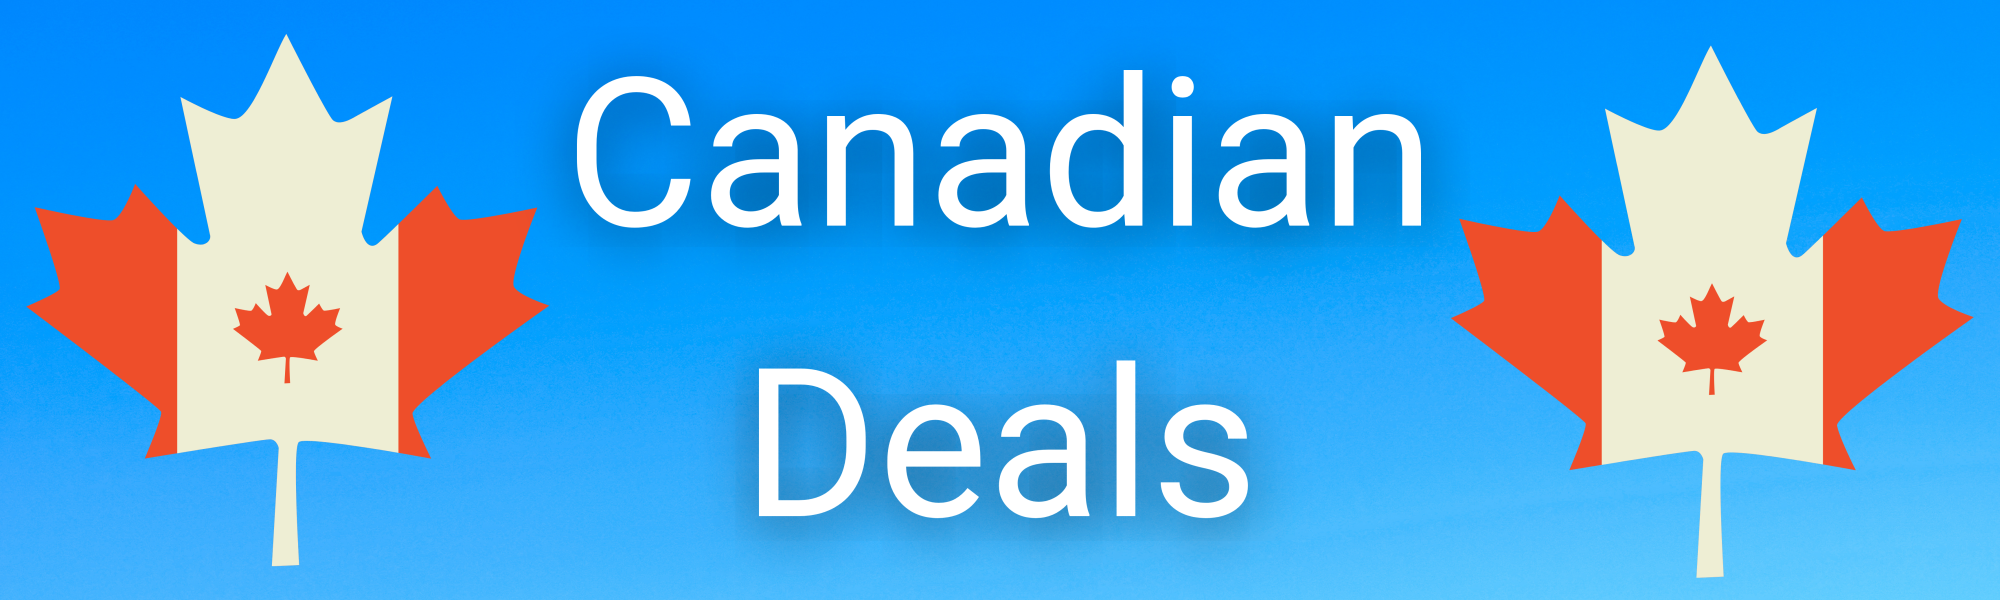 Canadian Deals